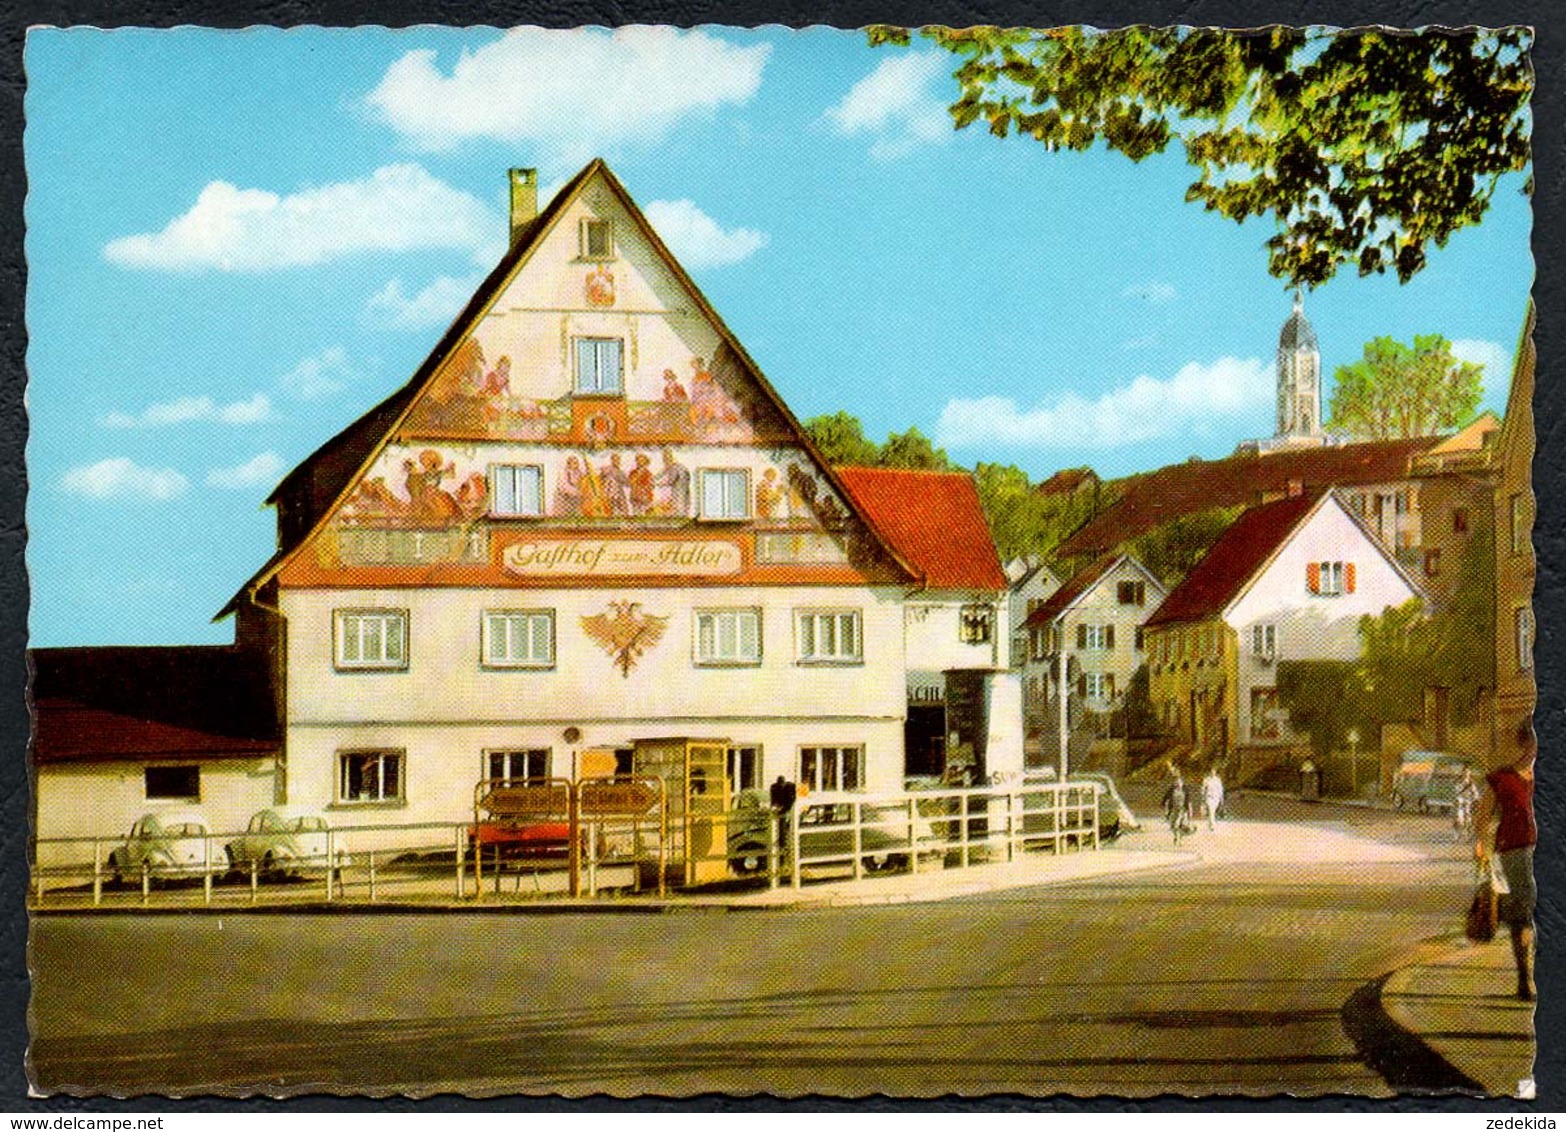 C1434 - TOP Ochsenhausen - Restaurant Gaststätte Zum Adler - Cramer - Biberach